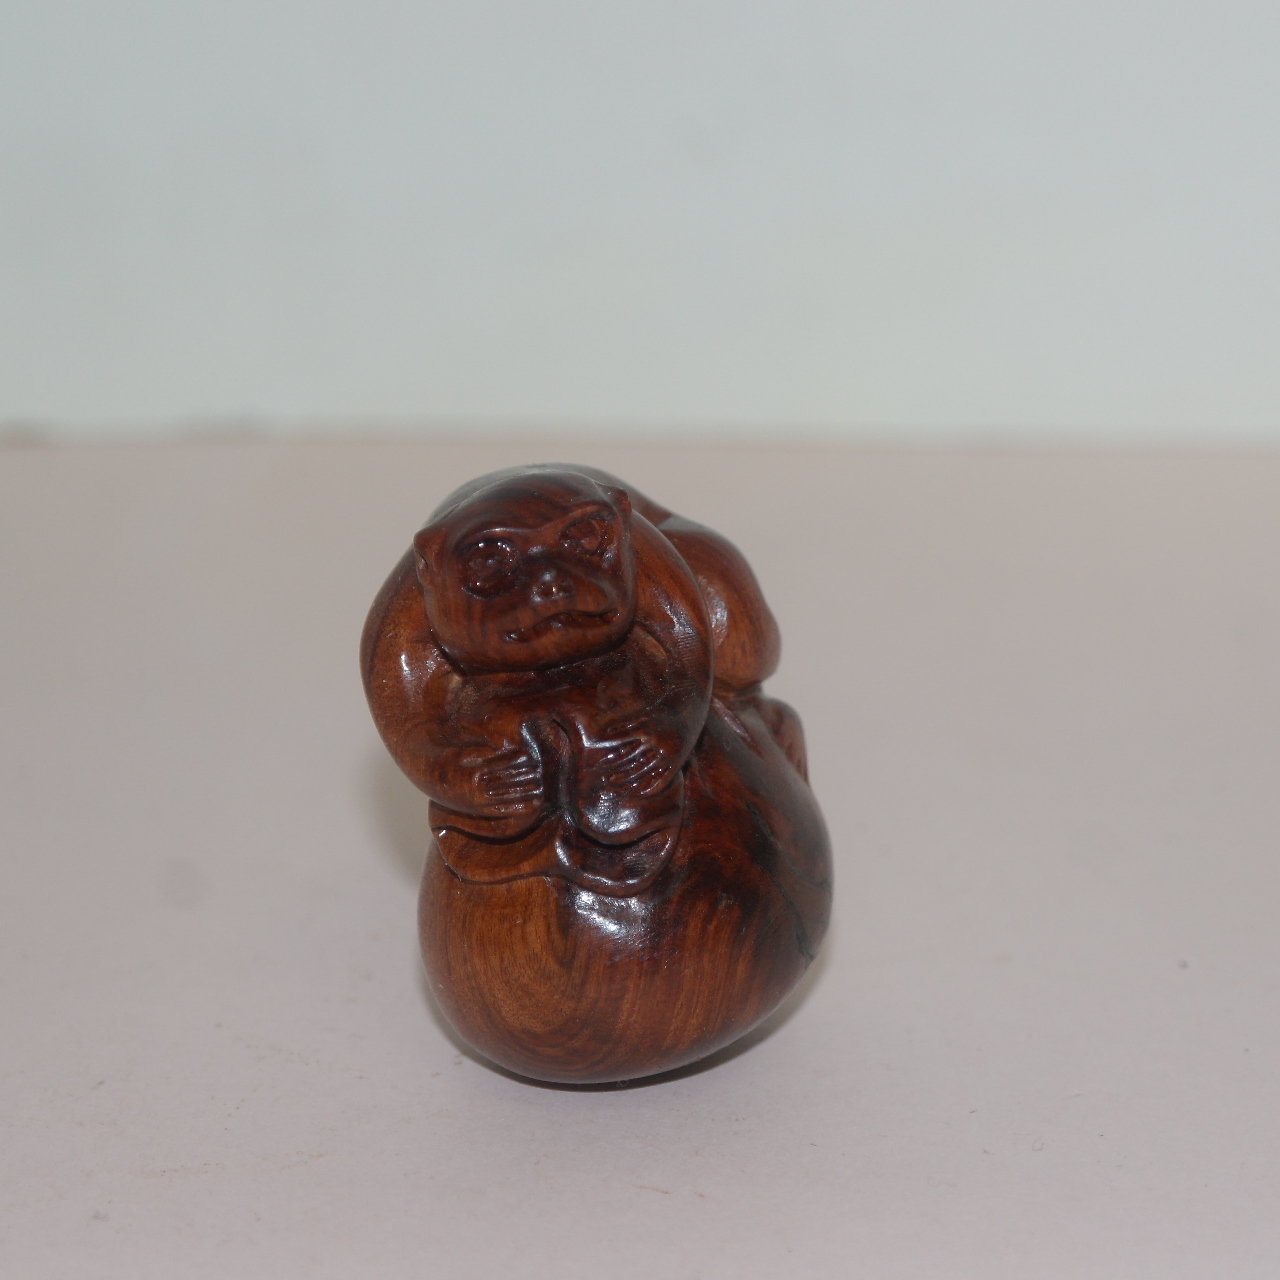 원목나무에 조각된 원숭이 조각노리개